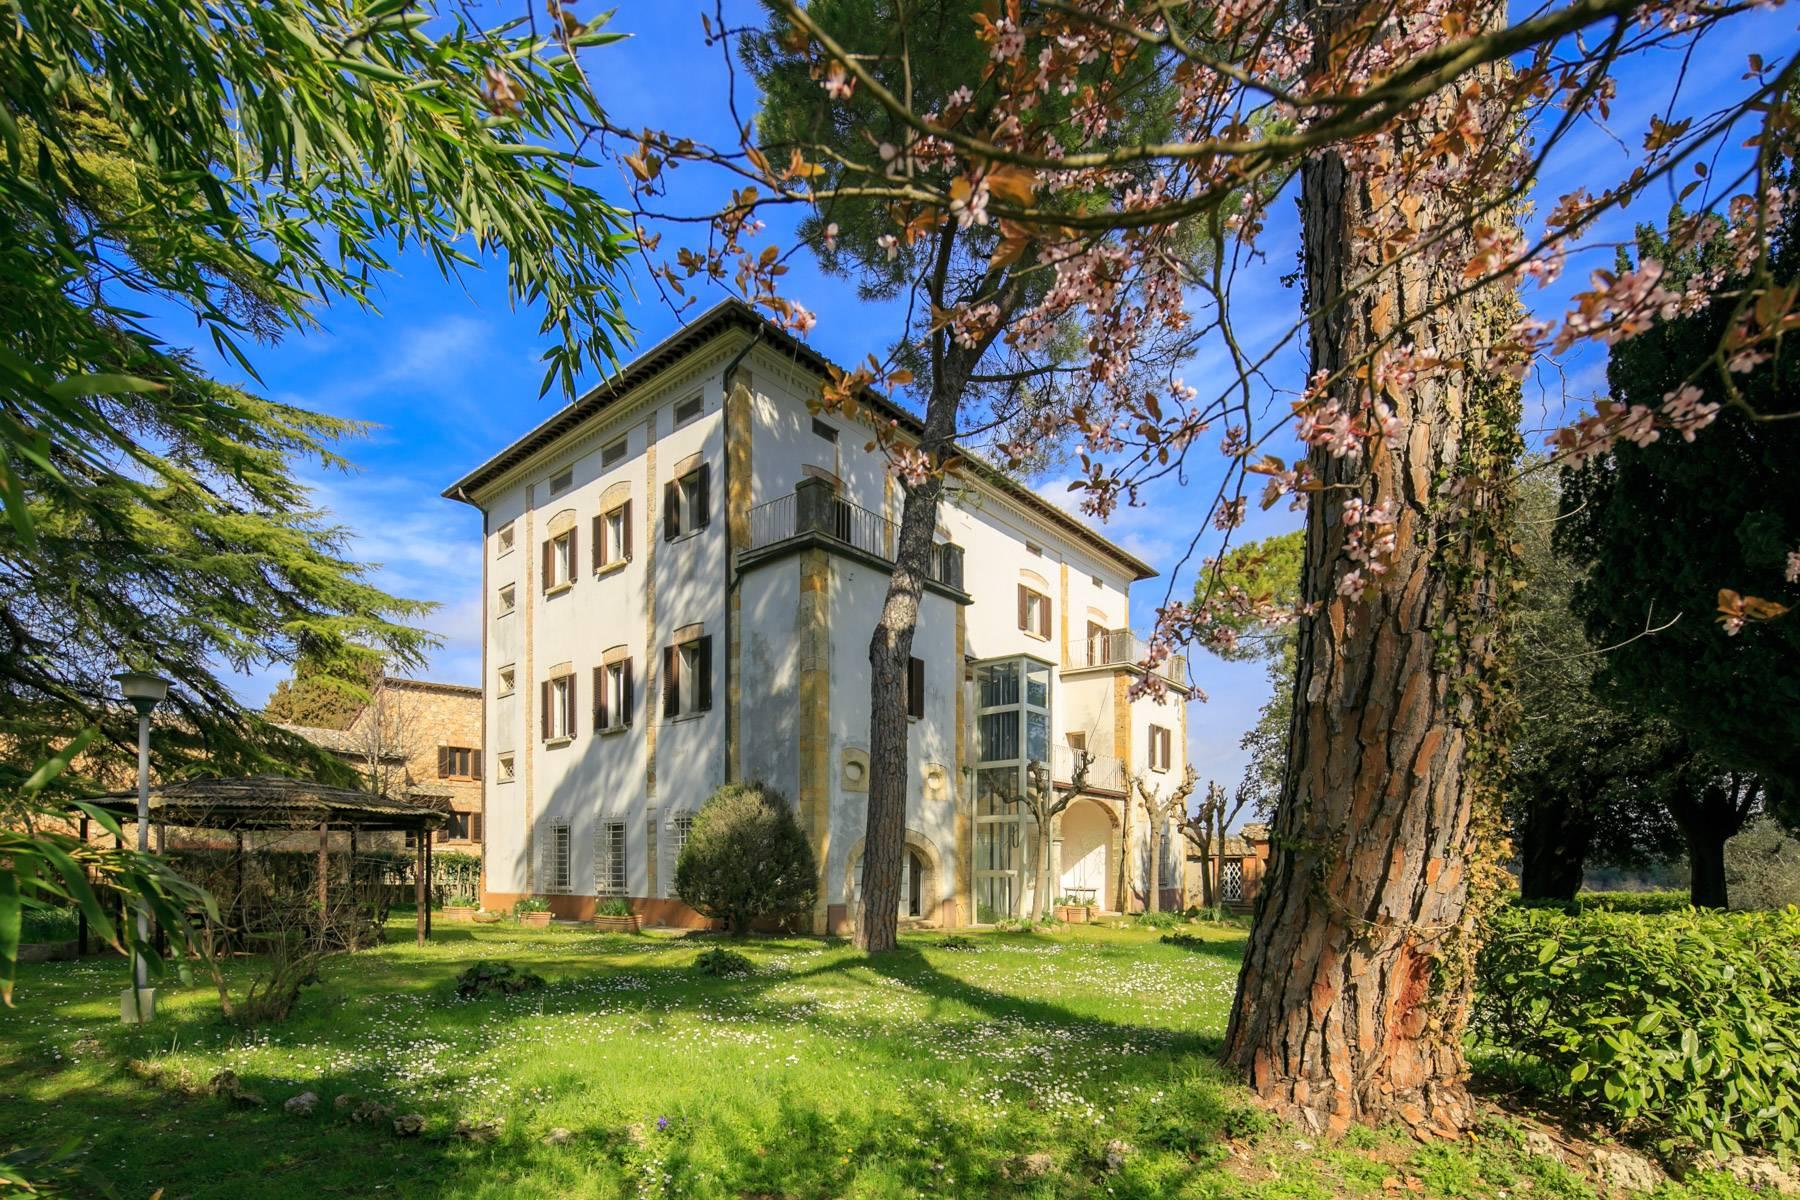 Prächtige historische Villa mit neoklassizistischer Kapelle und Park - 4